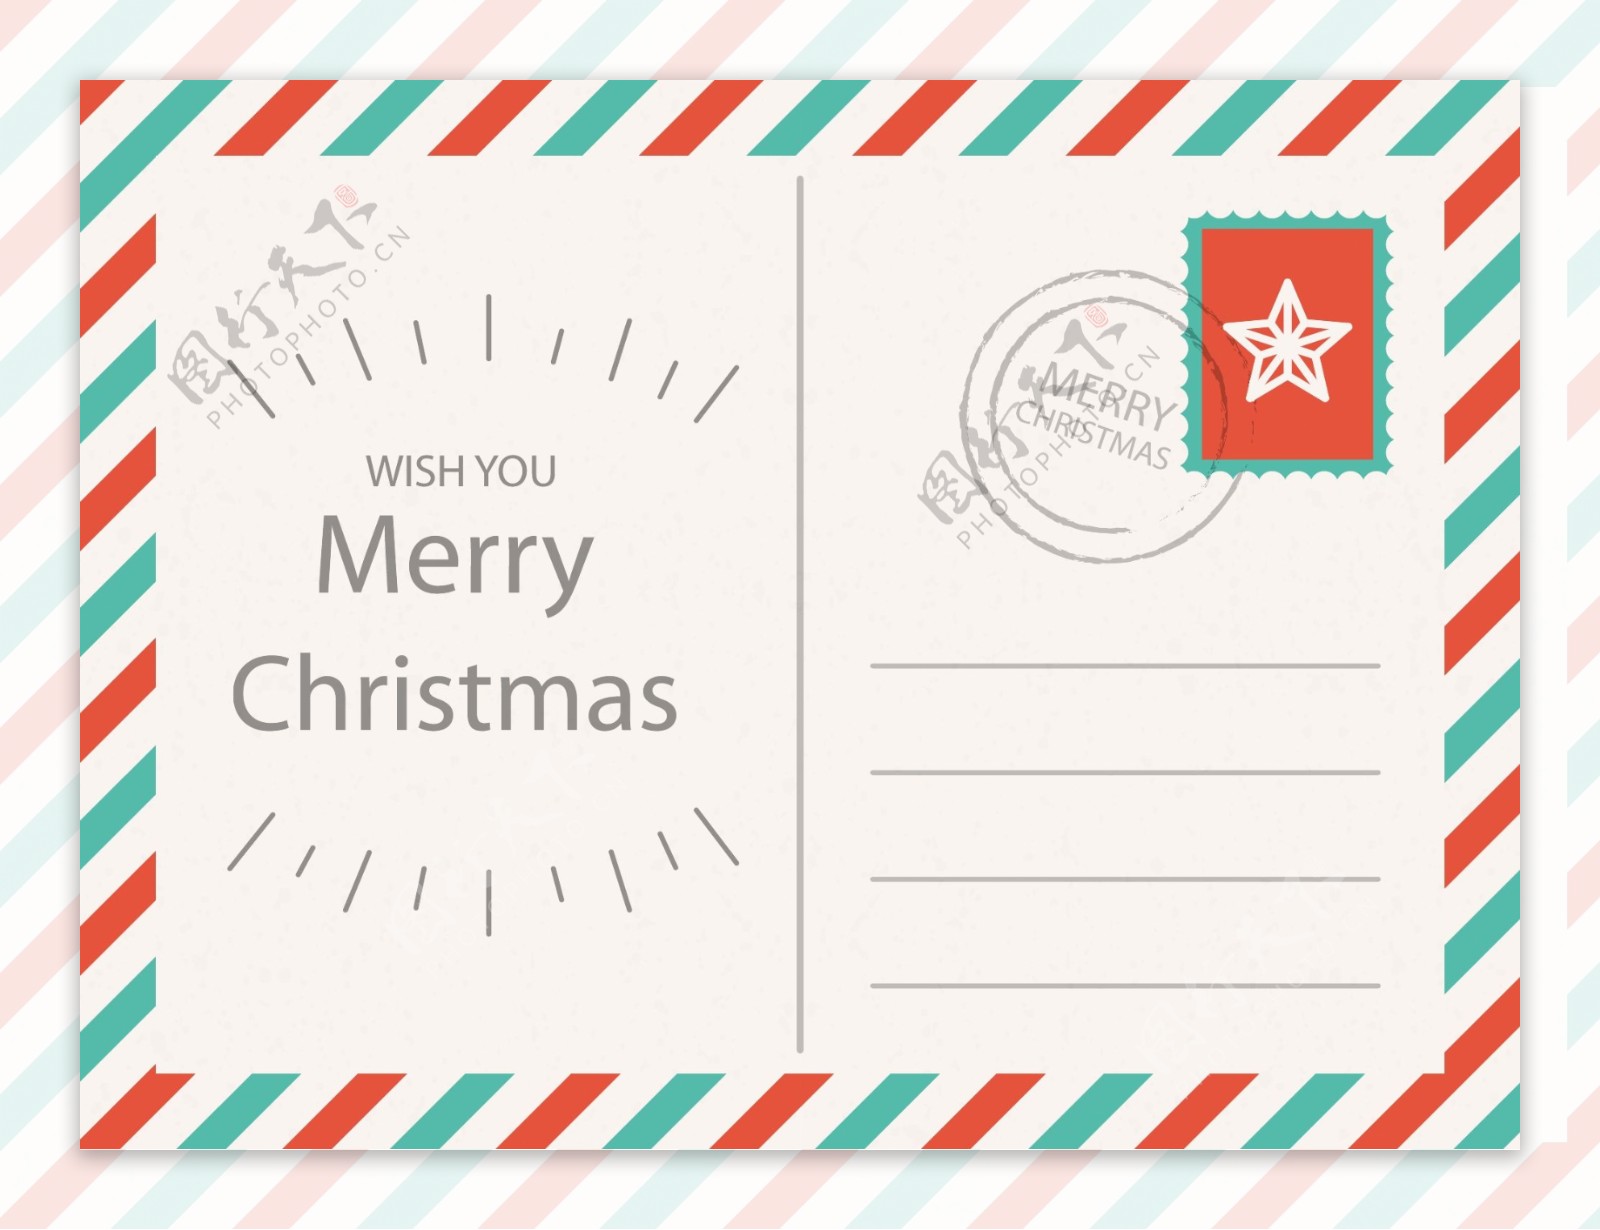 圣诞明信片与信封模板矢量素材下载